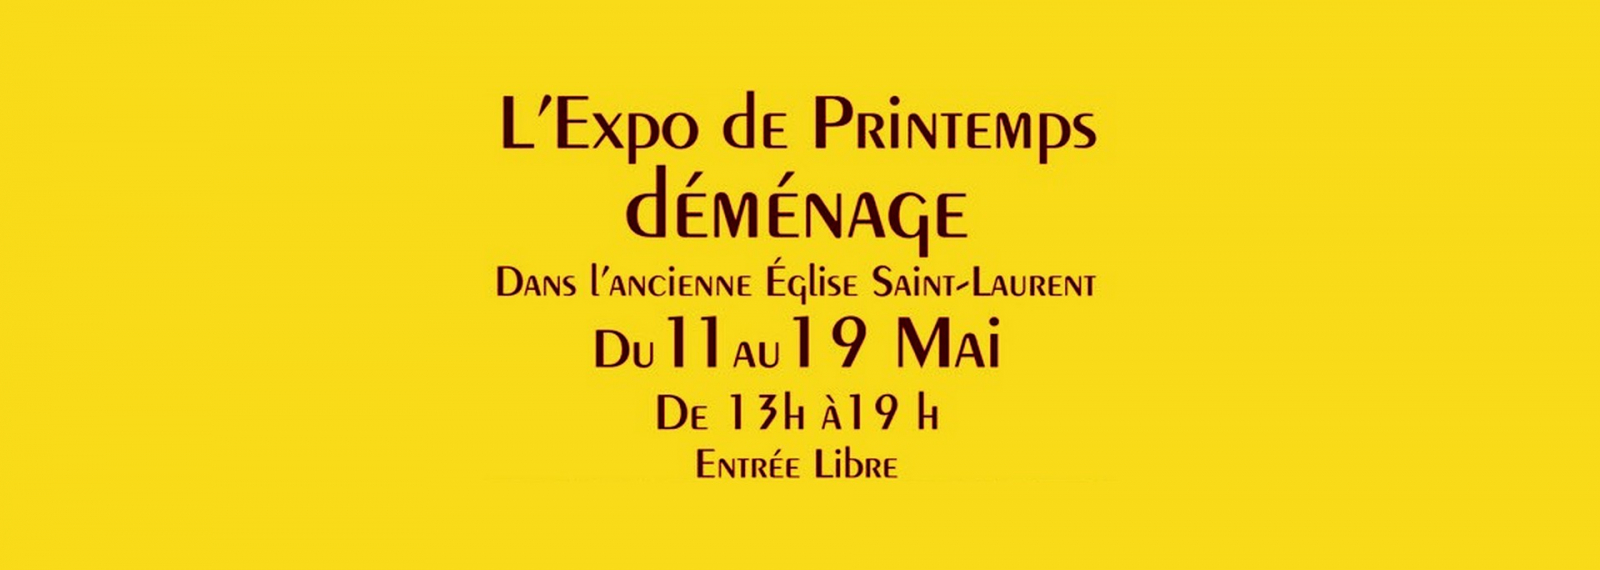 Exposition de Printemps à Eygalières